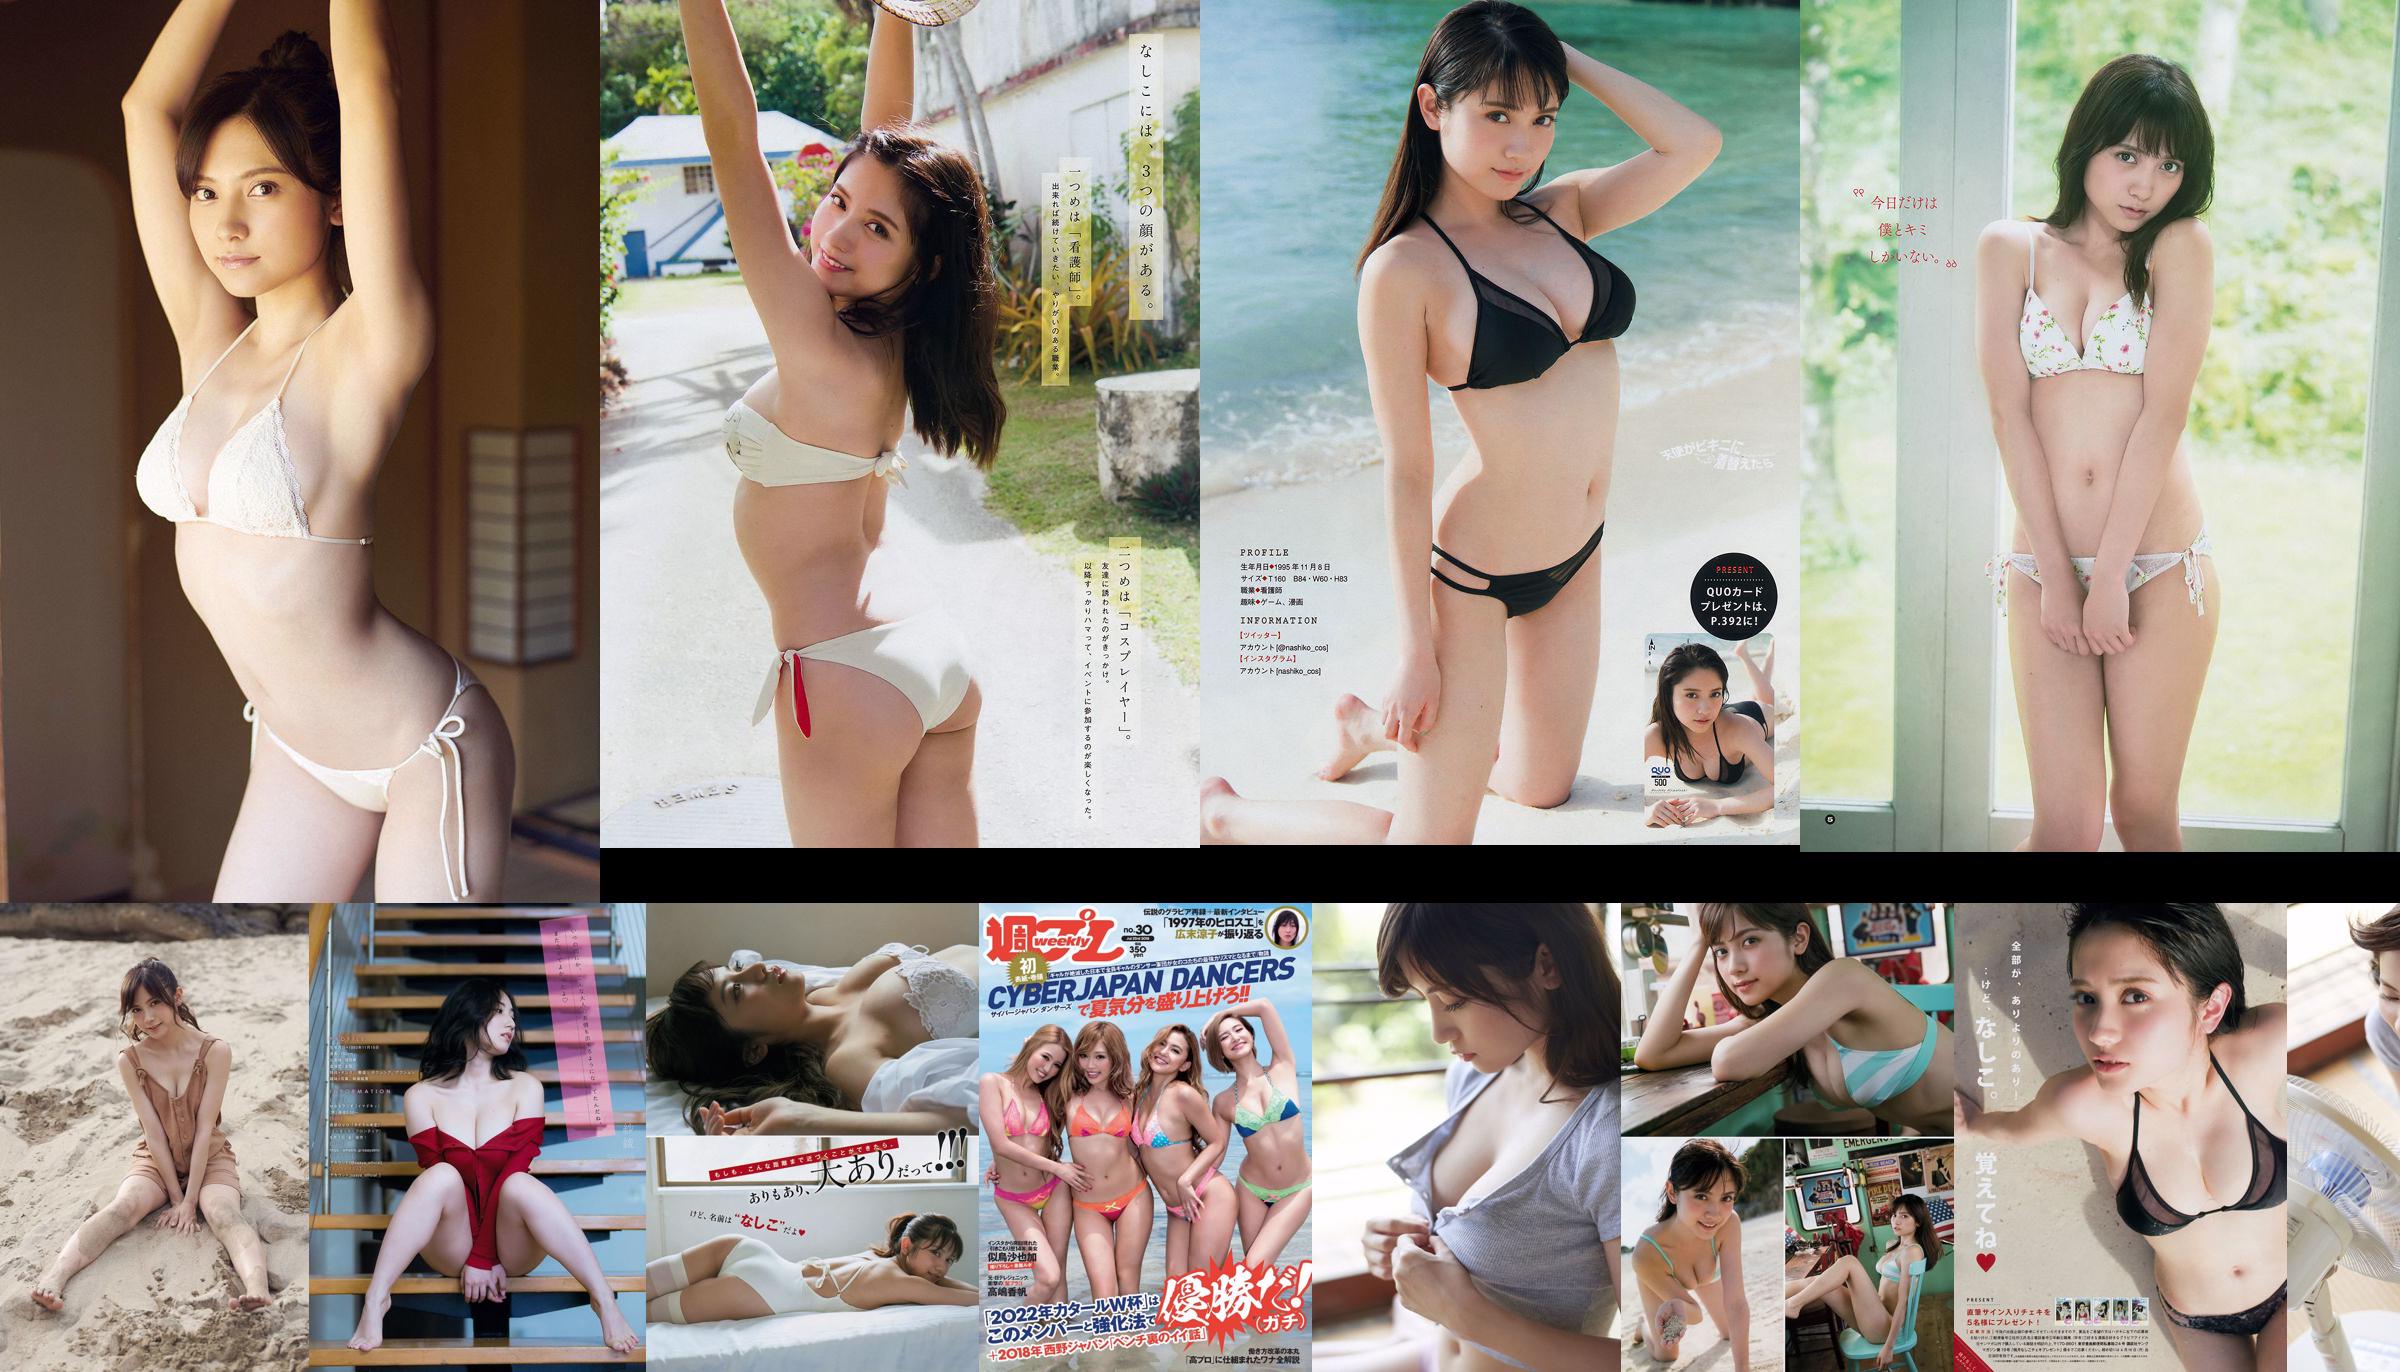 [Young Gangan] Nashiko Momotsuki Nashiko Saki, Rena Kuroki 2018 No.19 Foto No.cd6777 Pagina 1